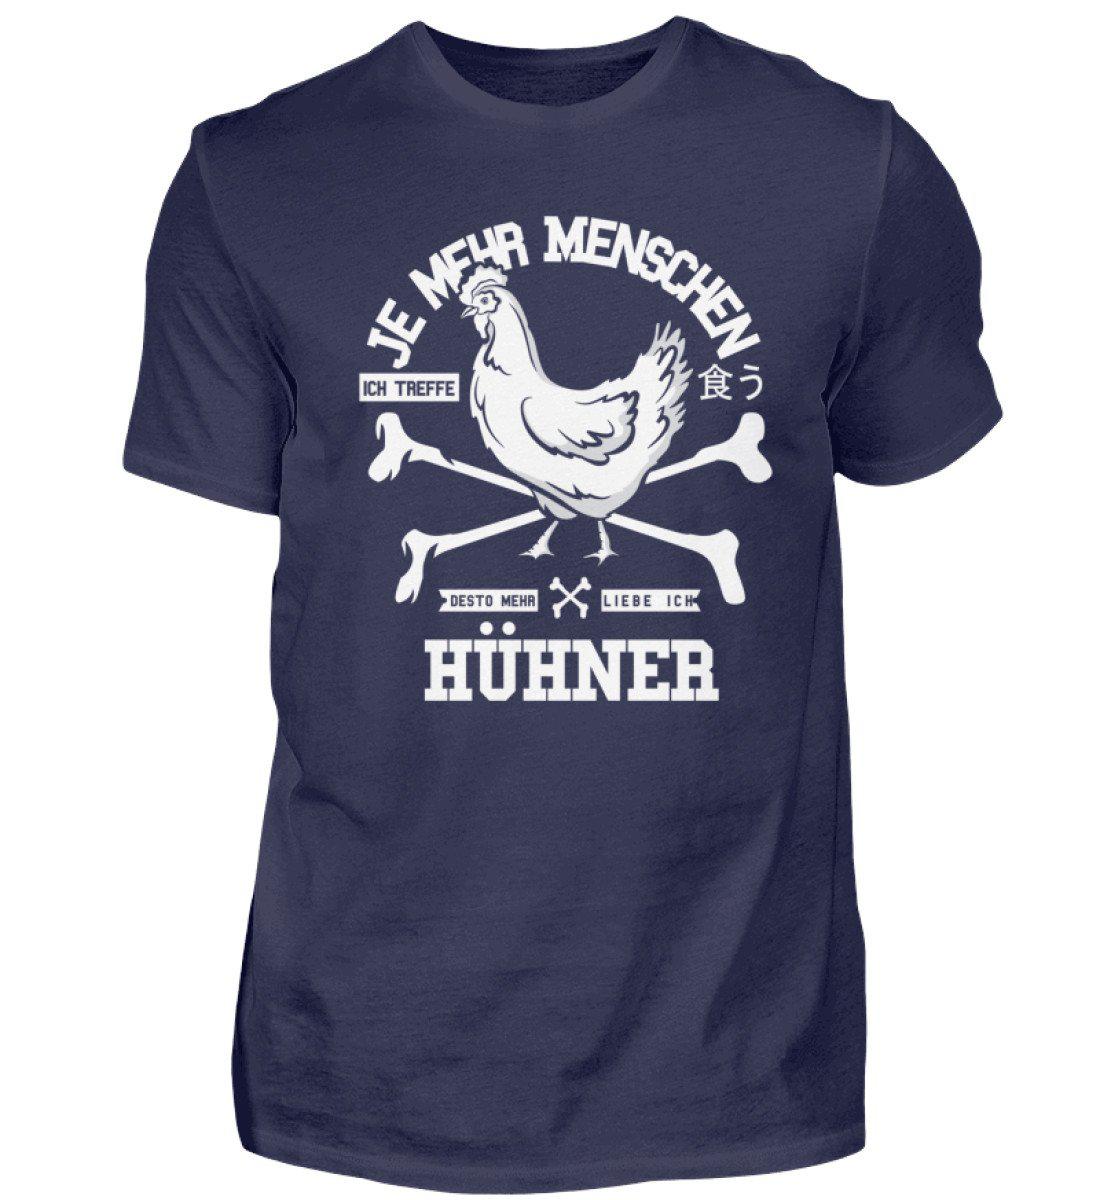 Desto mehr liebe ich Hühner · Herren T-Shirt-Herren Basic T-Shirt-Navy-S-Agrarstarz